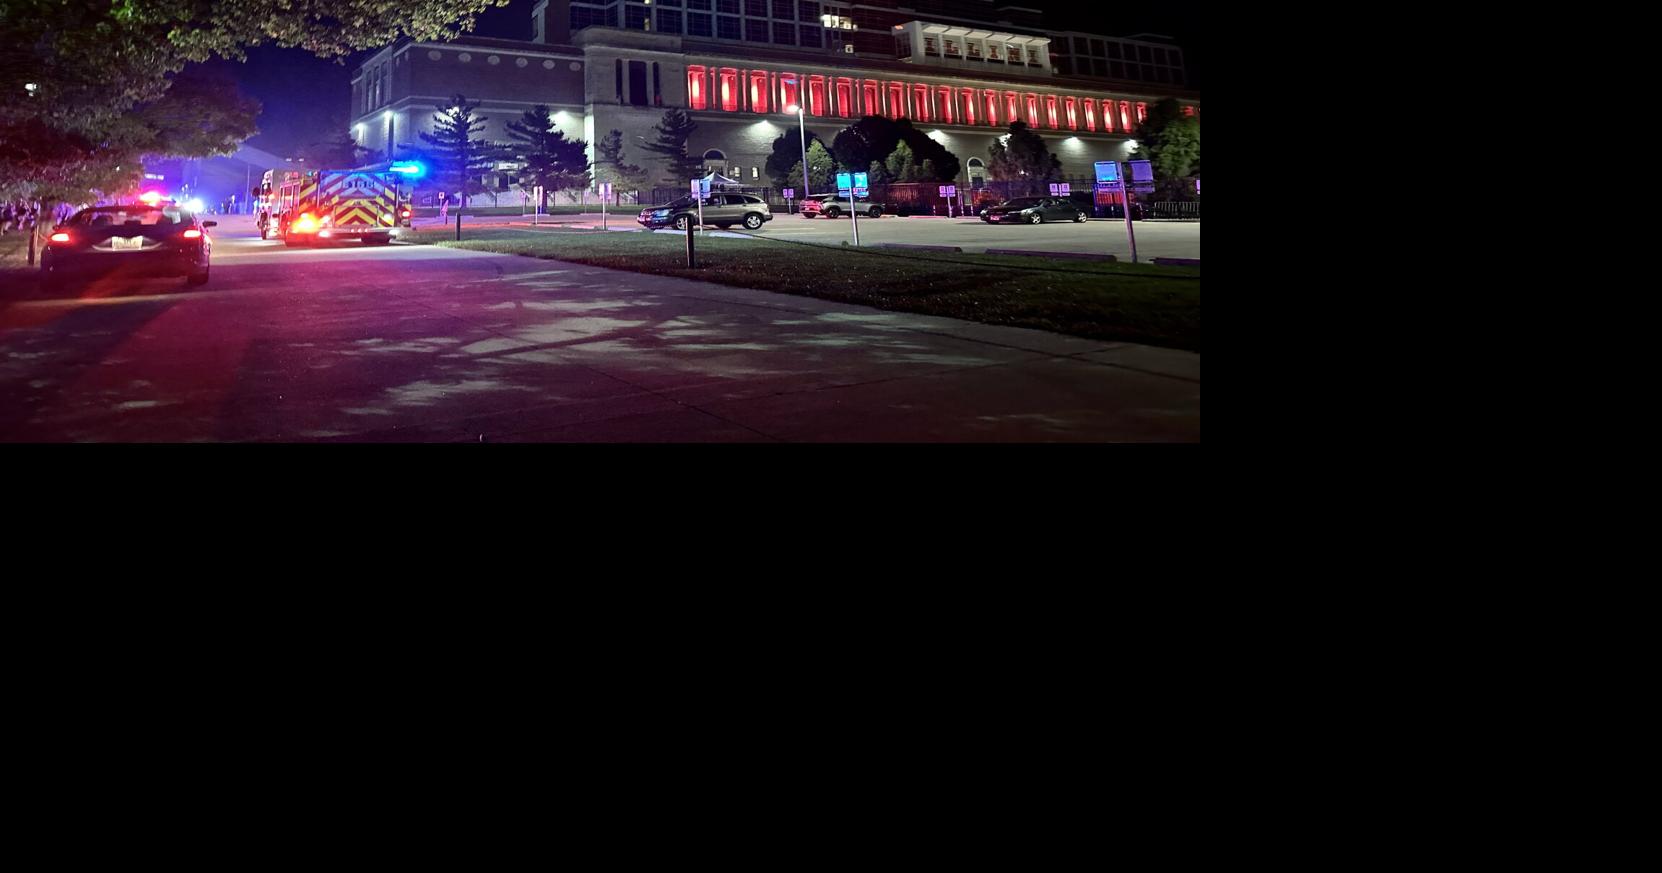 University of Illinois Athletics ha emitido una declaración sobre el incendio en el Estadio Memorial.